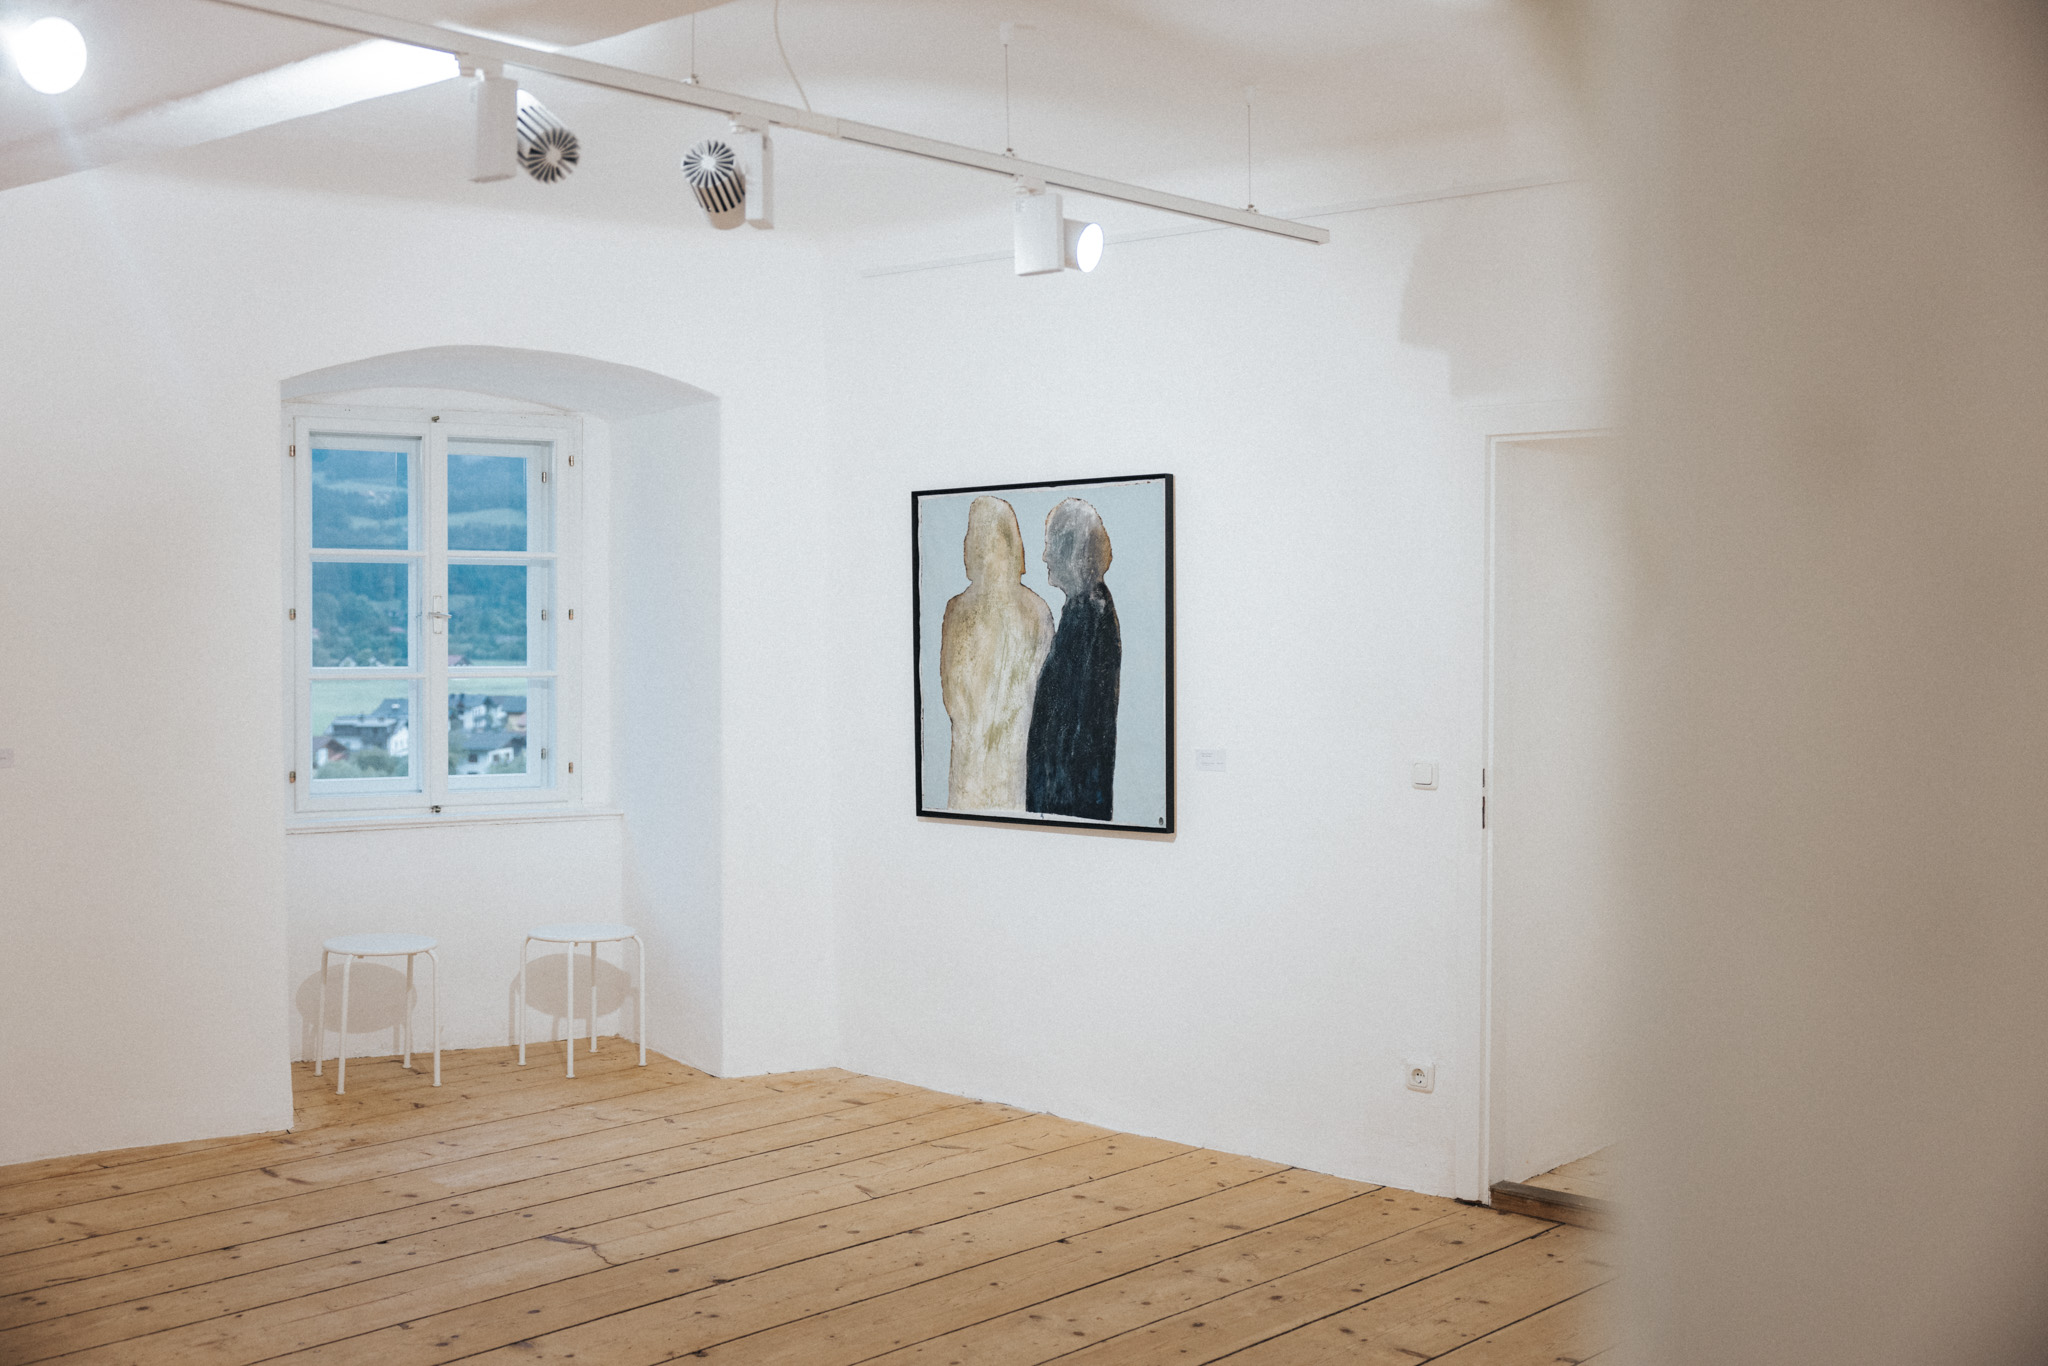 Eröffnung Ausstellung Peter Lohmeyer Kunstraum Burg Golling@Zuparino Niko Zuparic 4151 | Zuparino - Niko Zuparic